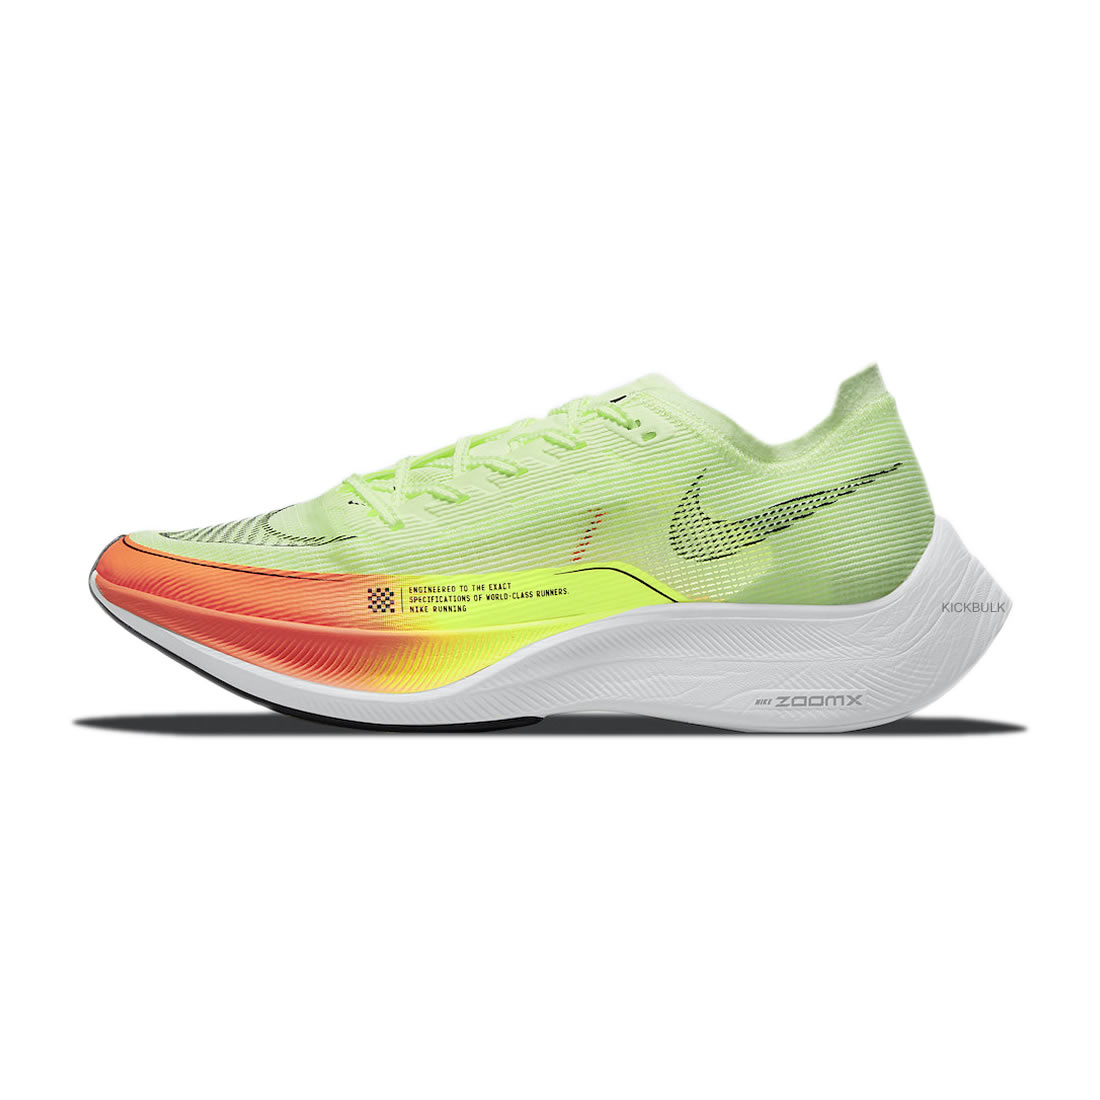 Nike Zoomx Vaporfly Next Neon Cu4111 700 1 - www.kickbulk.cc